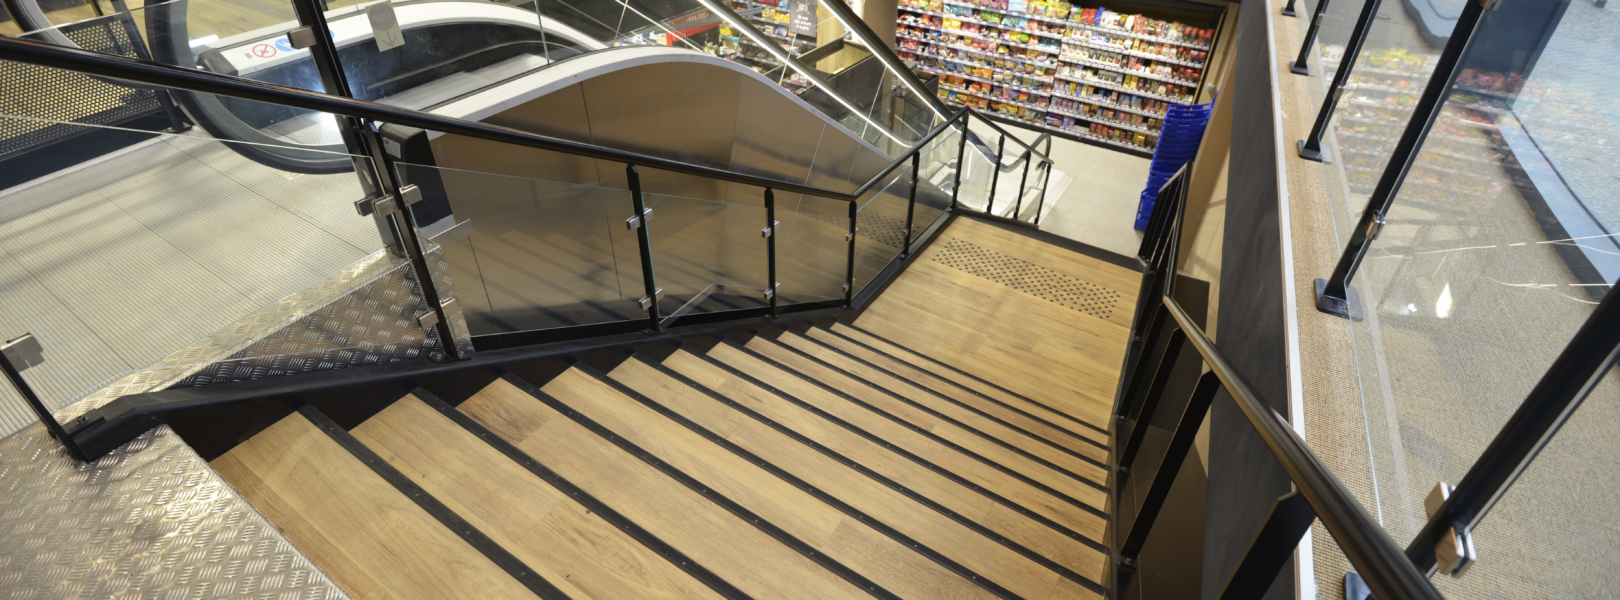 Vue dessus escalier conforme normes ERP supermarche escalier acier noir garde-corps verre et marches linoleum.